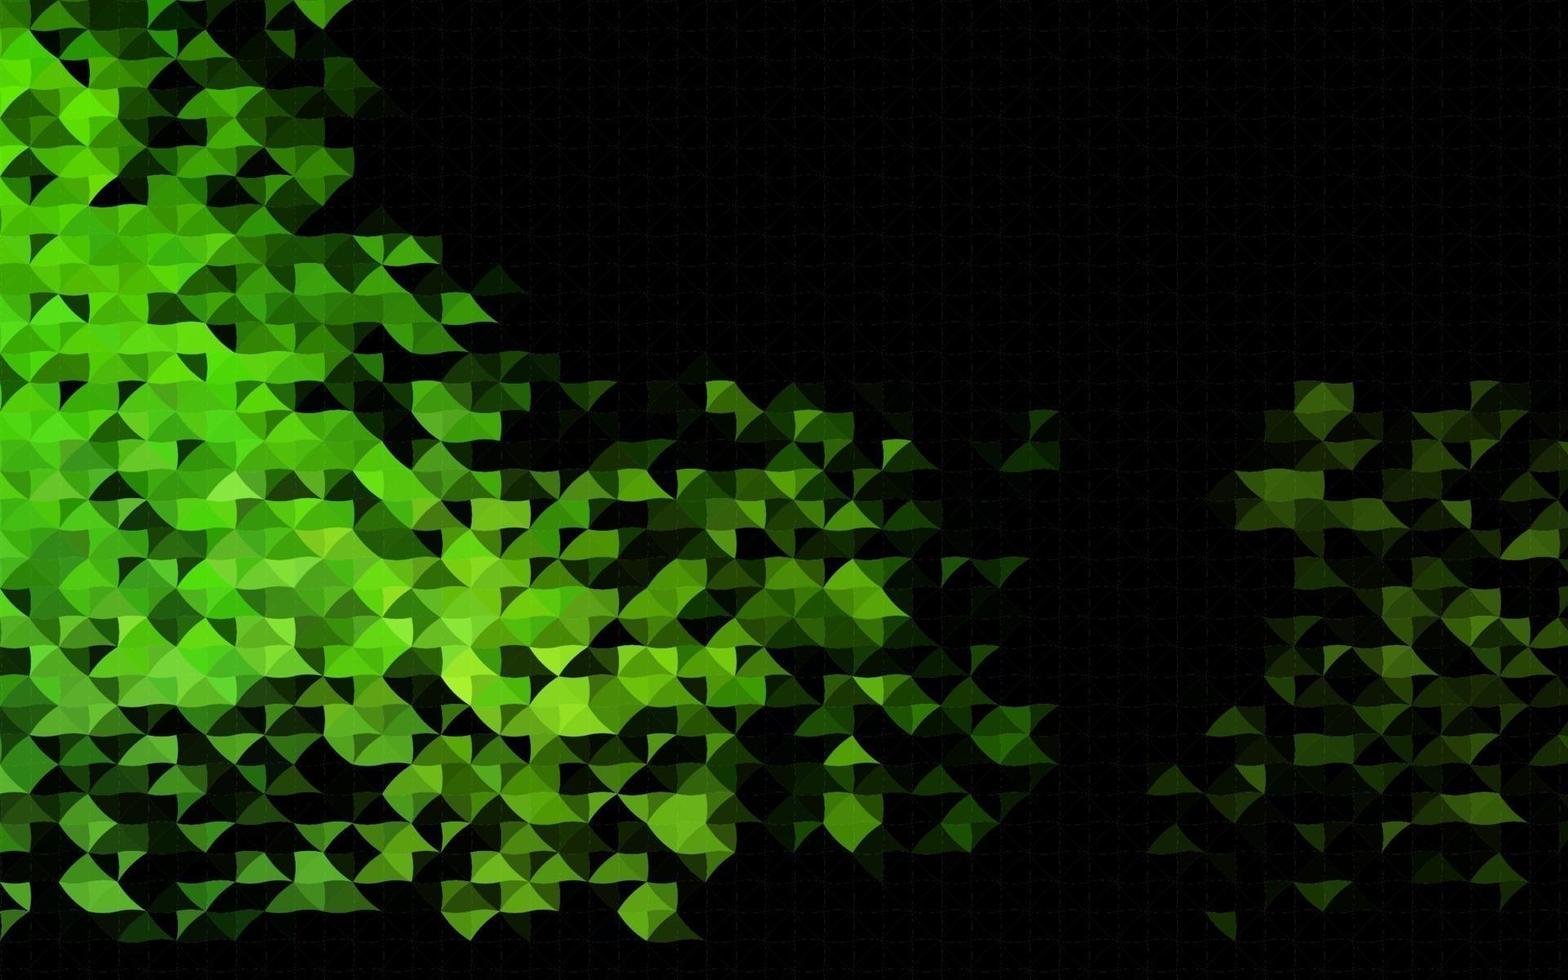 Dark Green vector texture in triangular style.